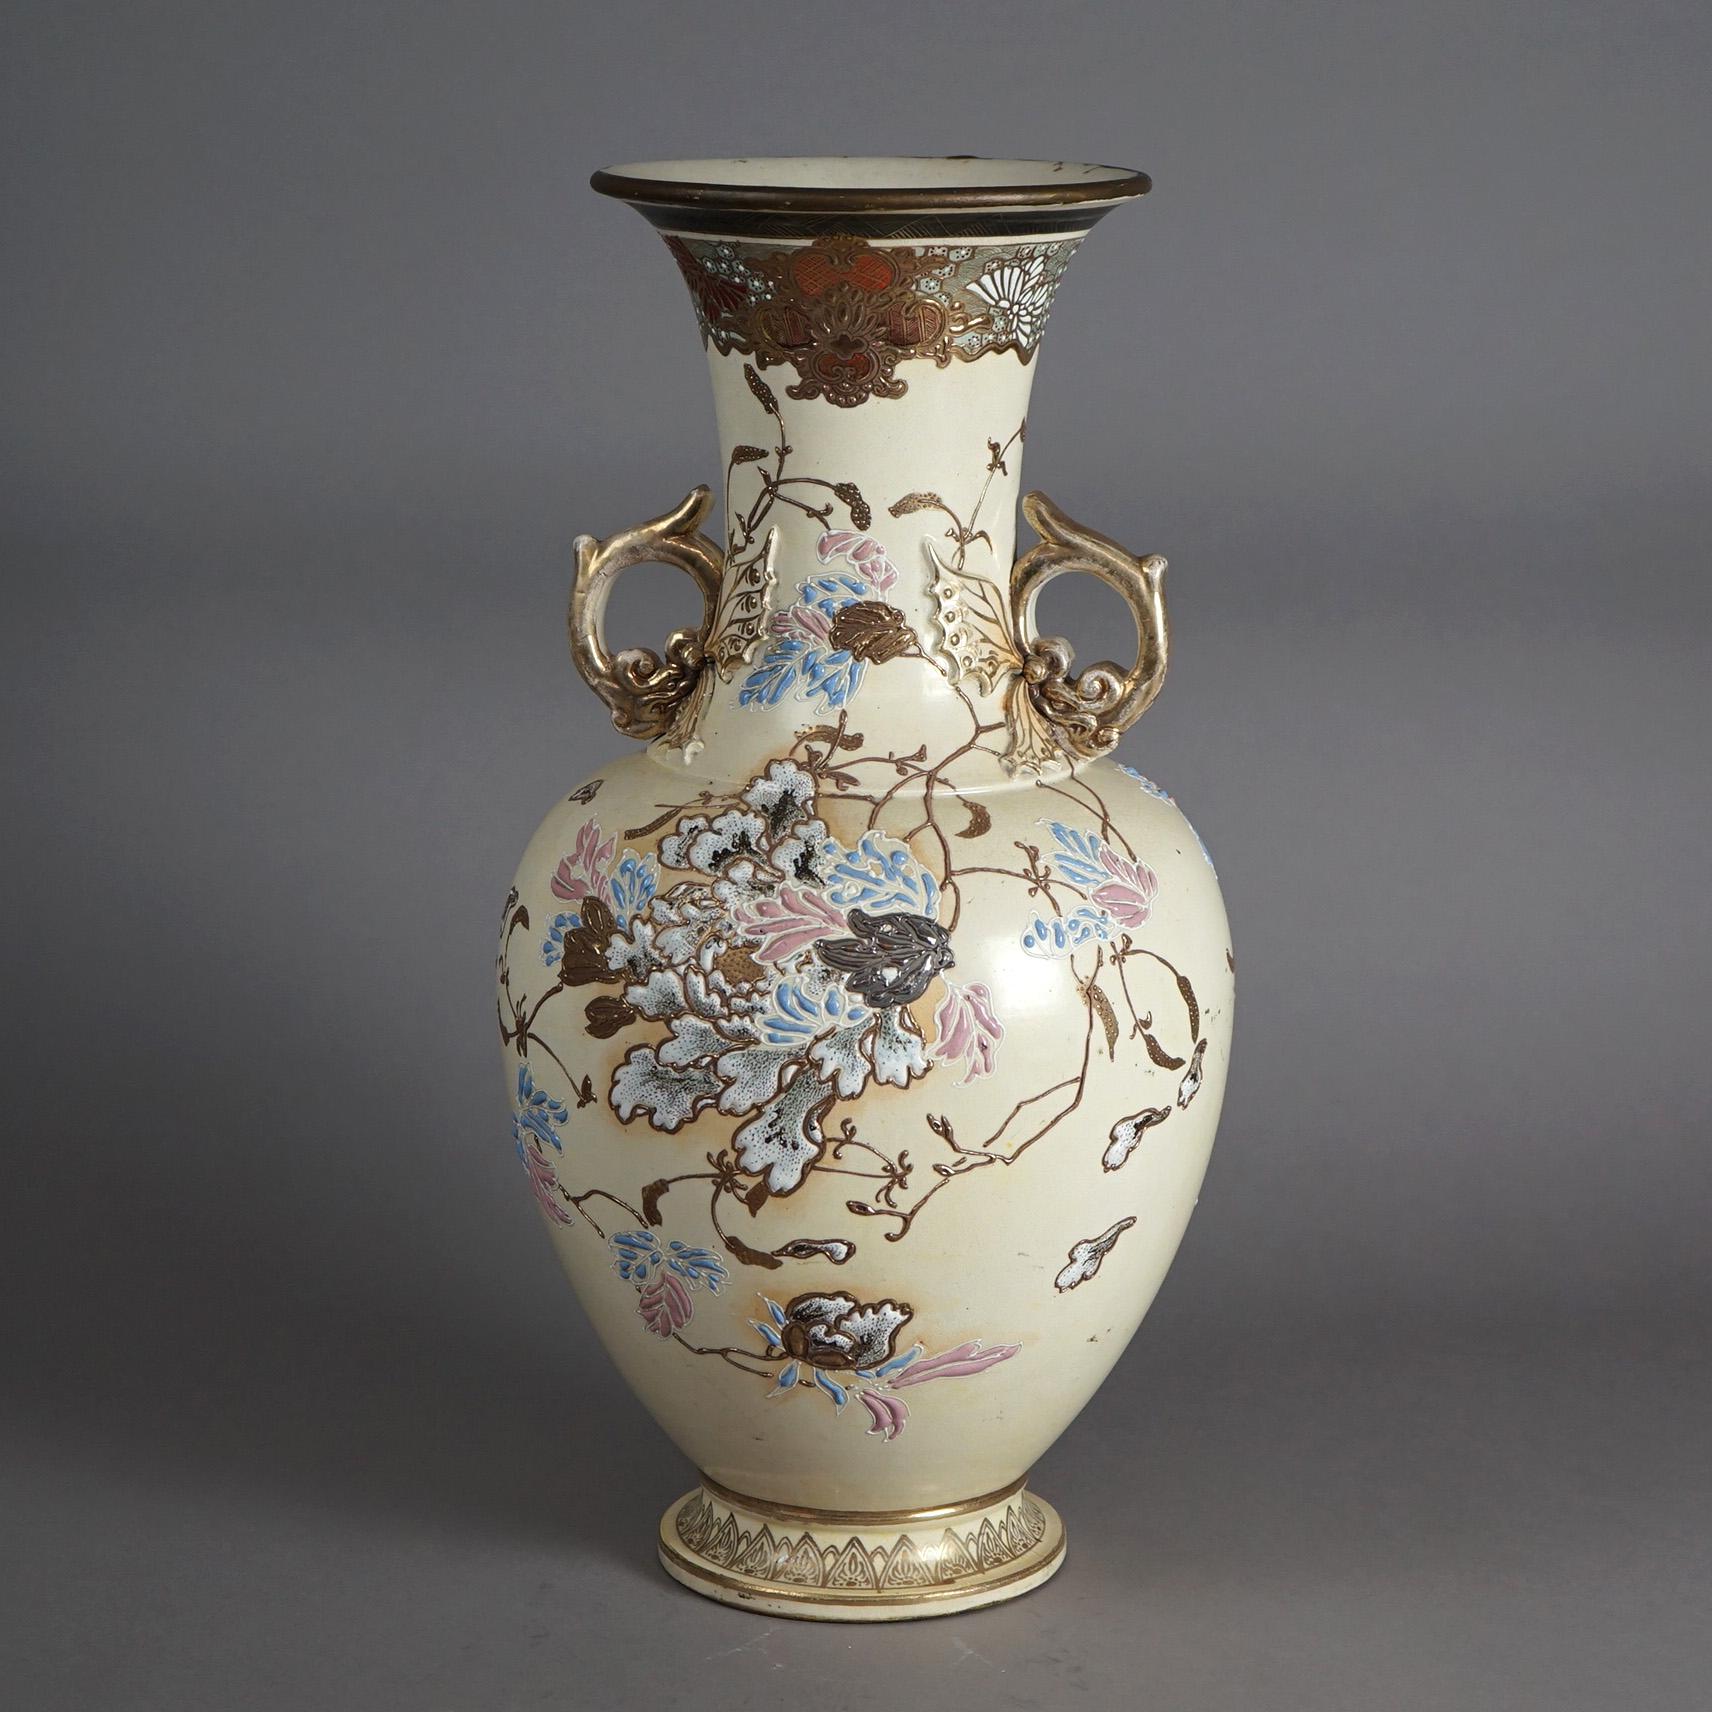 Un vase japonais Meiji ancien offre une construction en poterie  avec motif de jardin floral peint à la main, doubles poignées et reflets dorés sur l'ensemble, signé sur la base comme photographié, c1900

Dimensions : 20,5''H x 10,5''L x 10,5''P